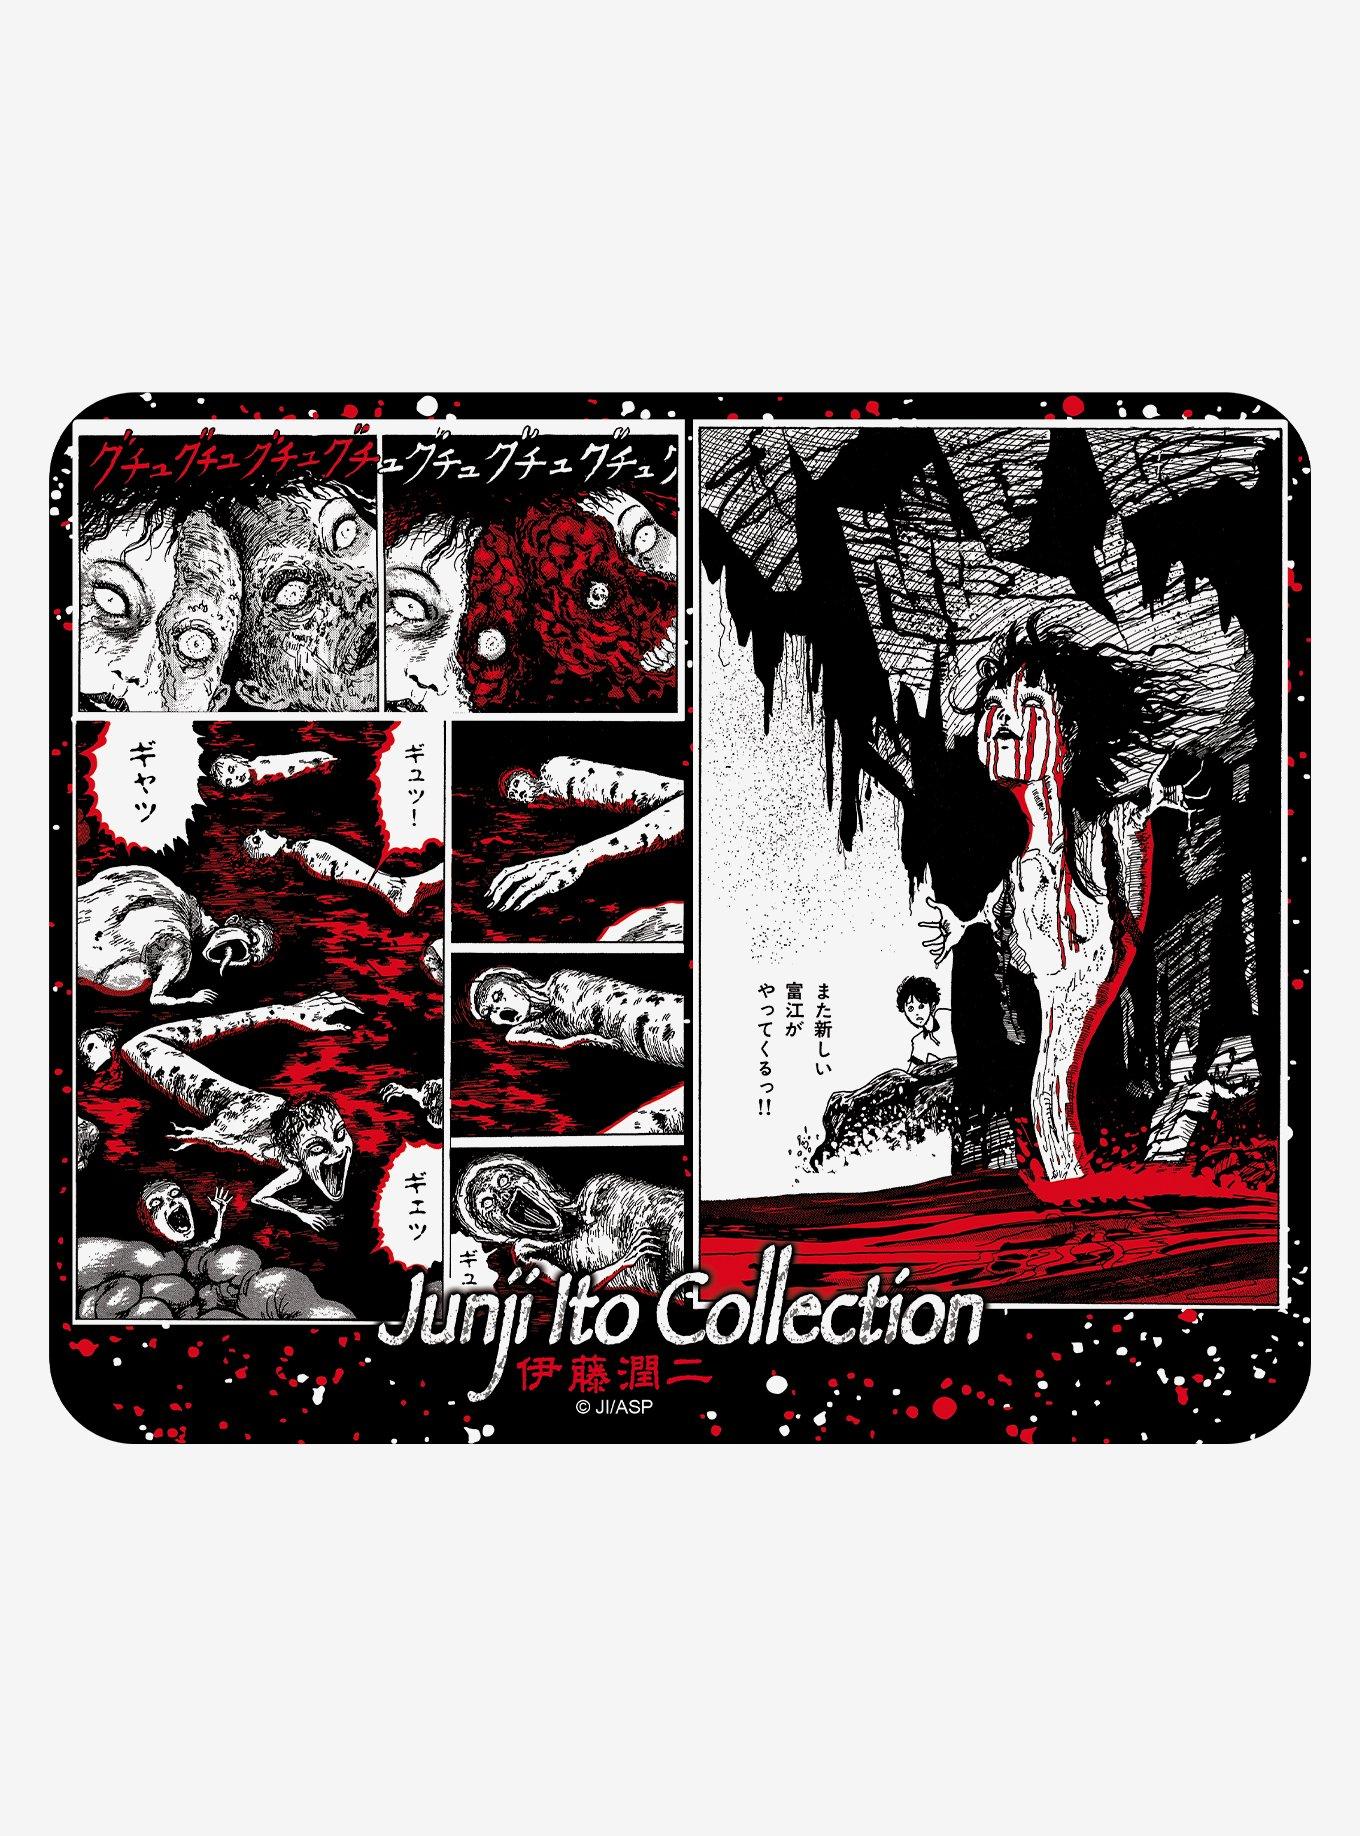 富江」: 𝗧𝗼𝗺𝗶𝗲 Pt. 1 𝐚𝐧𝐢𝐦𝐞 Junji Ito Collection • 伊藤